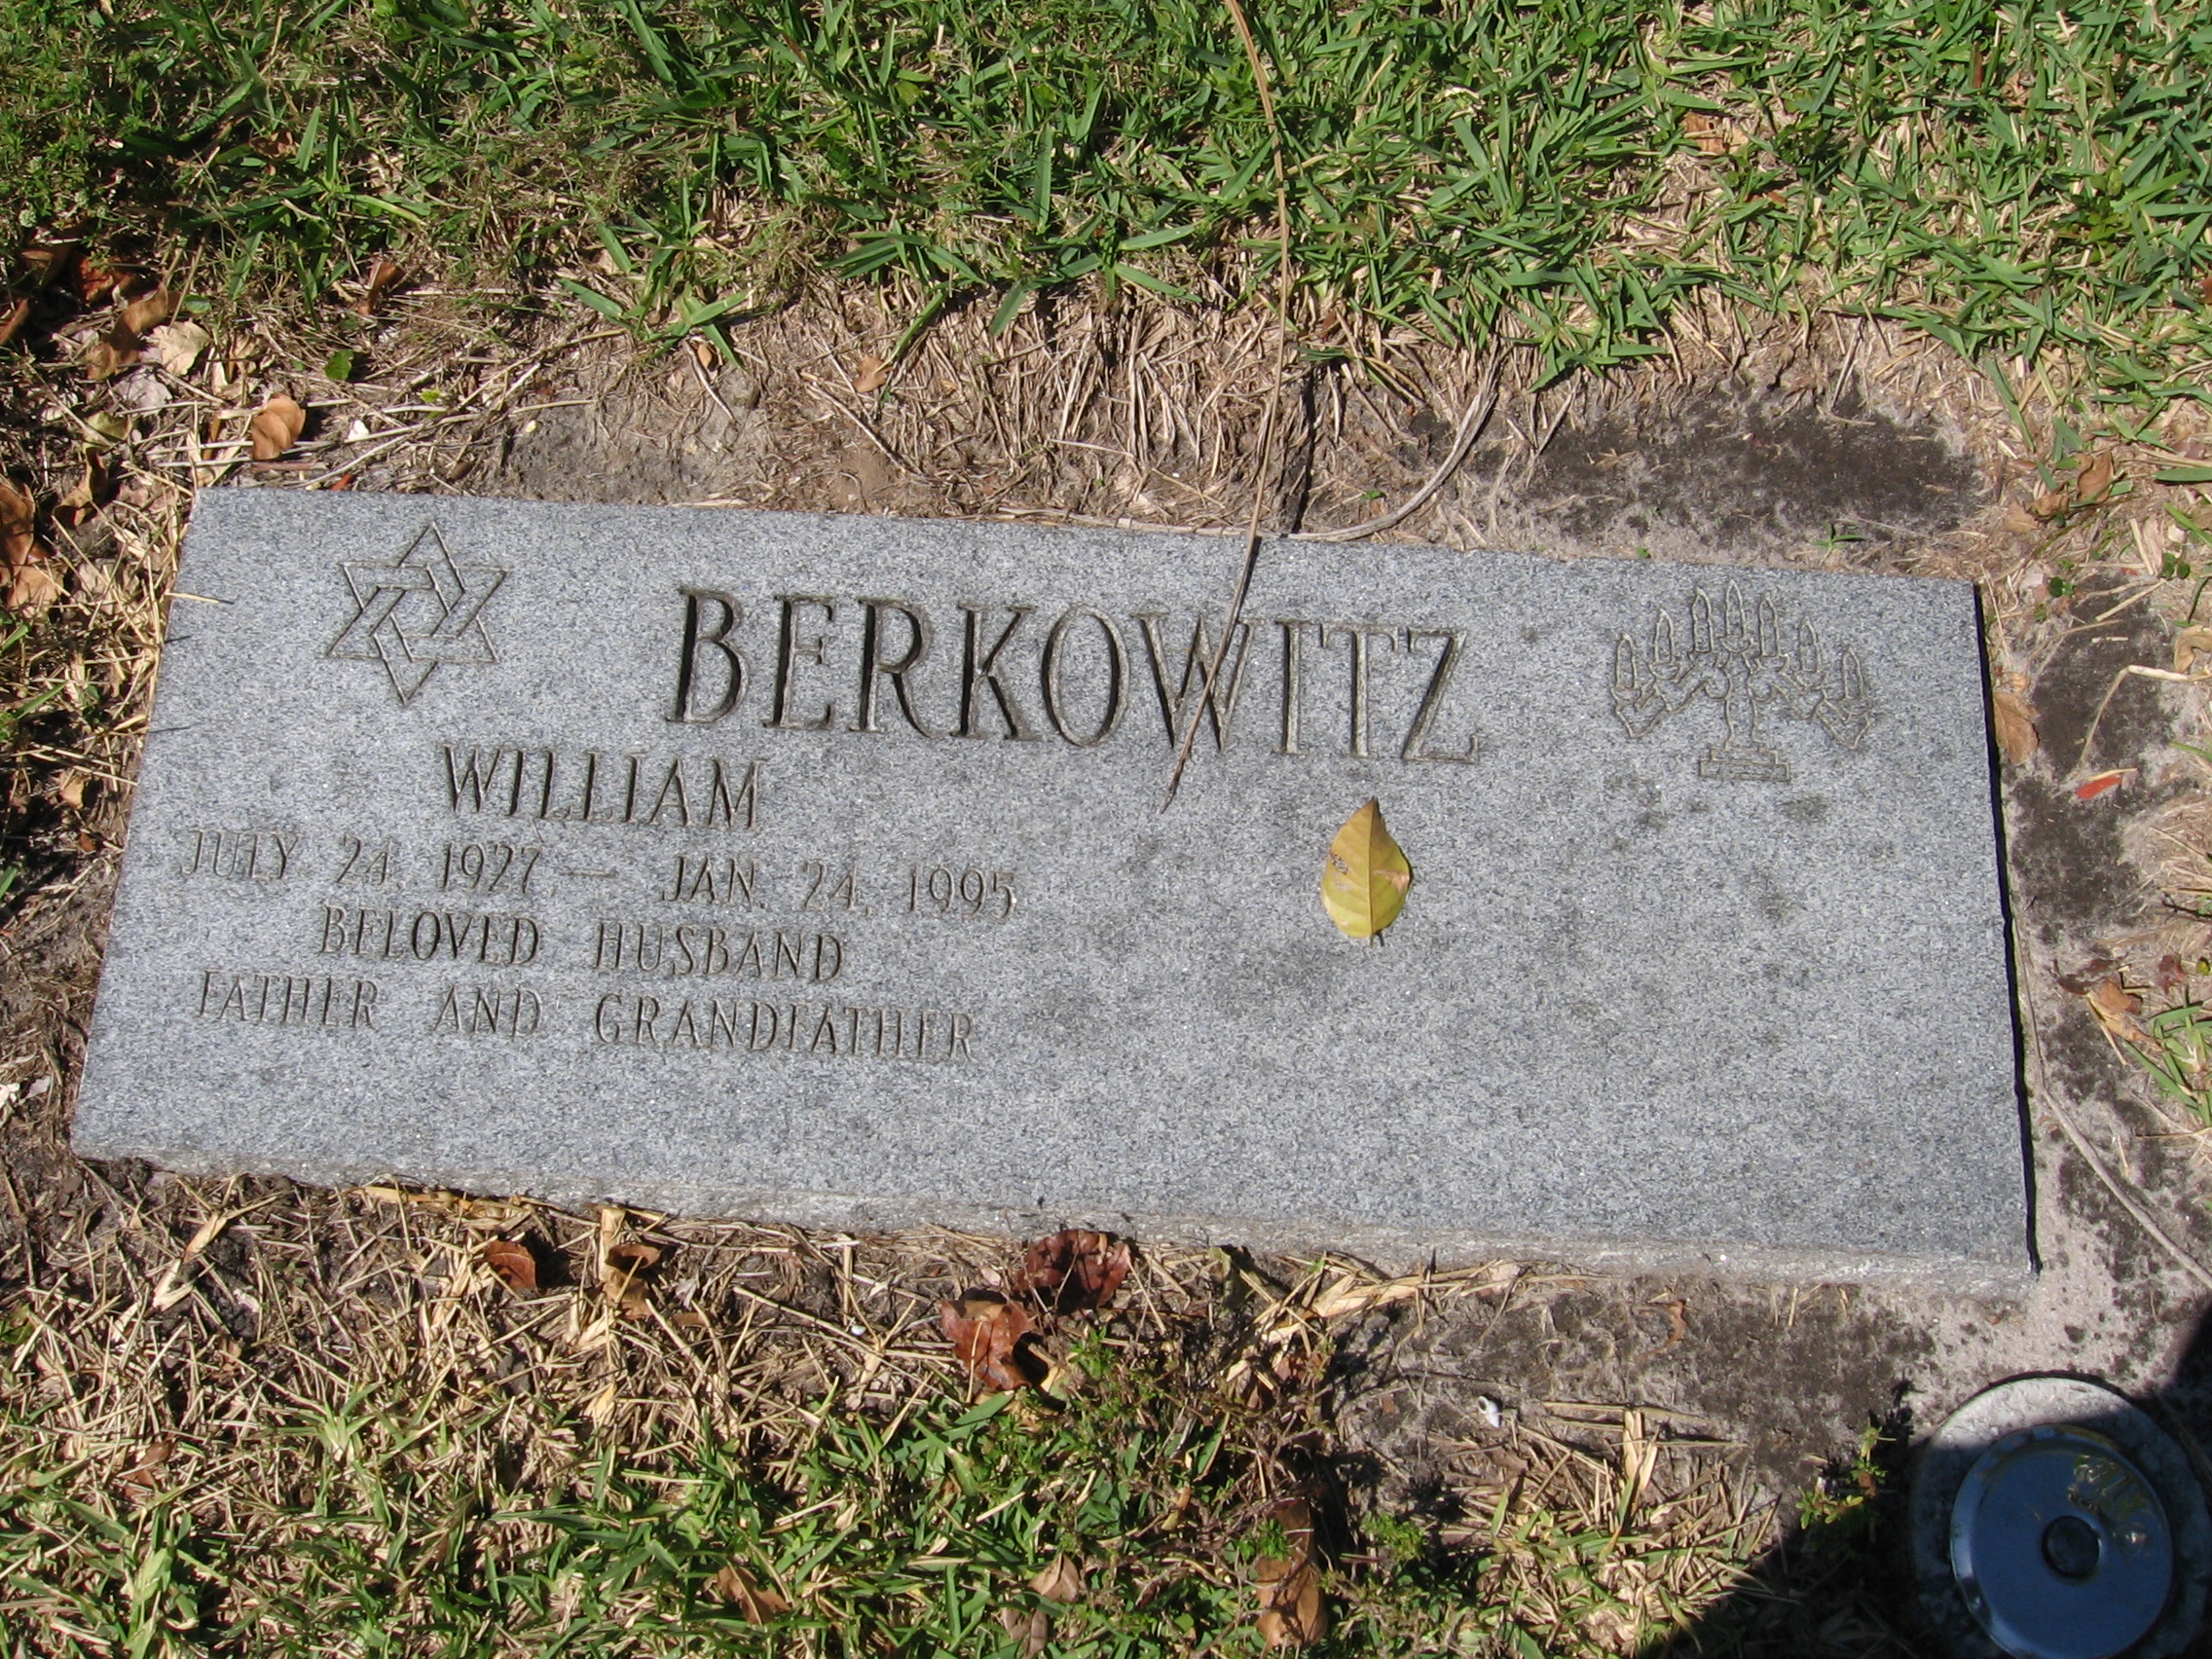 William Berkowitz